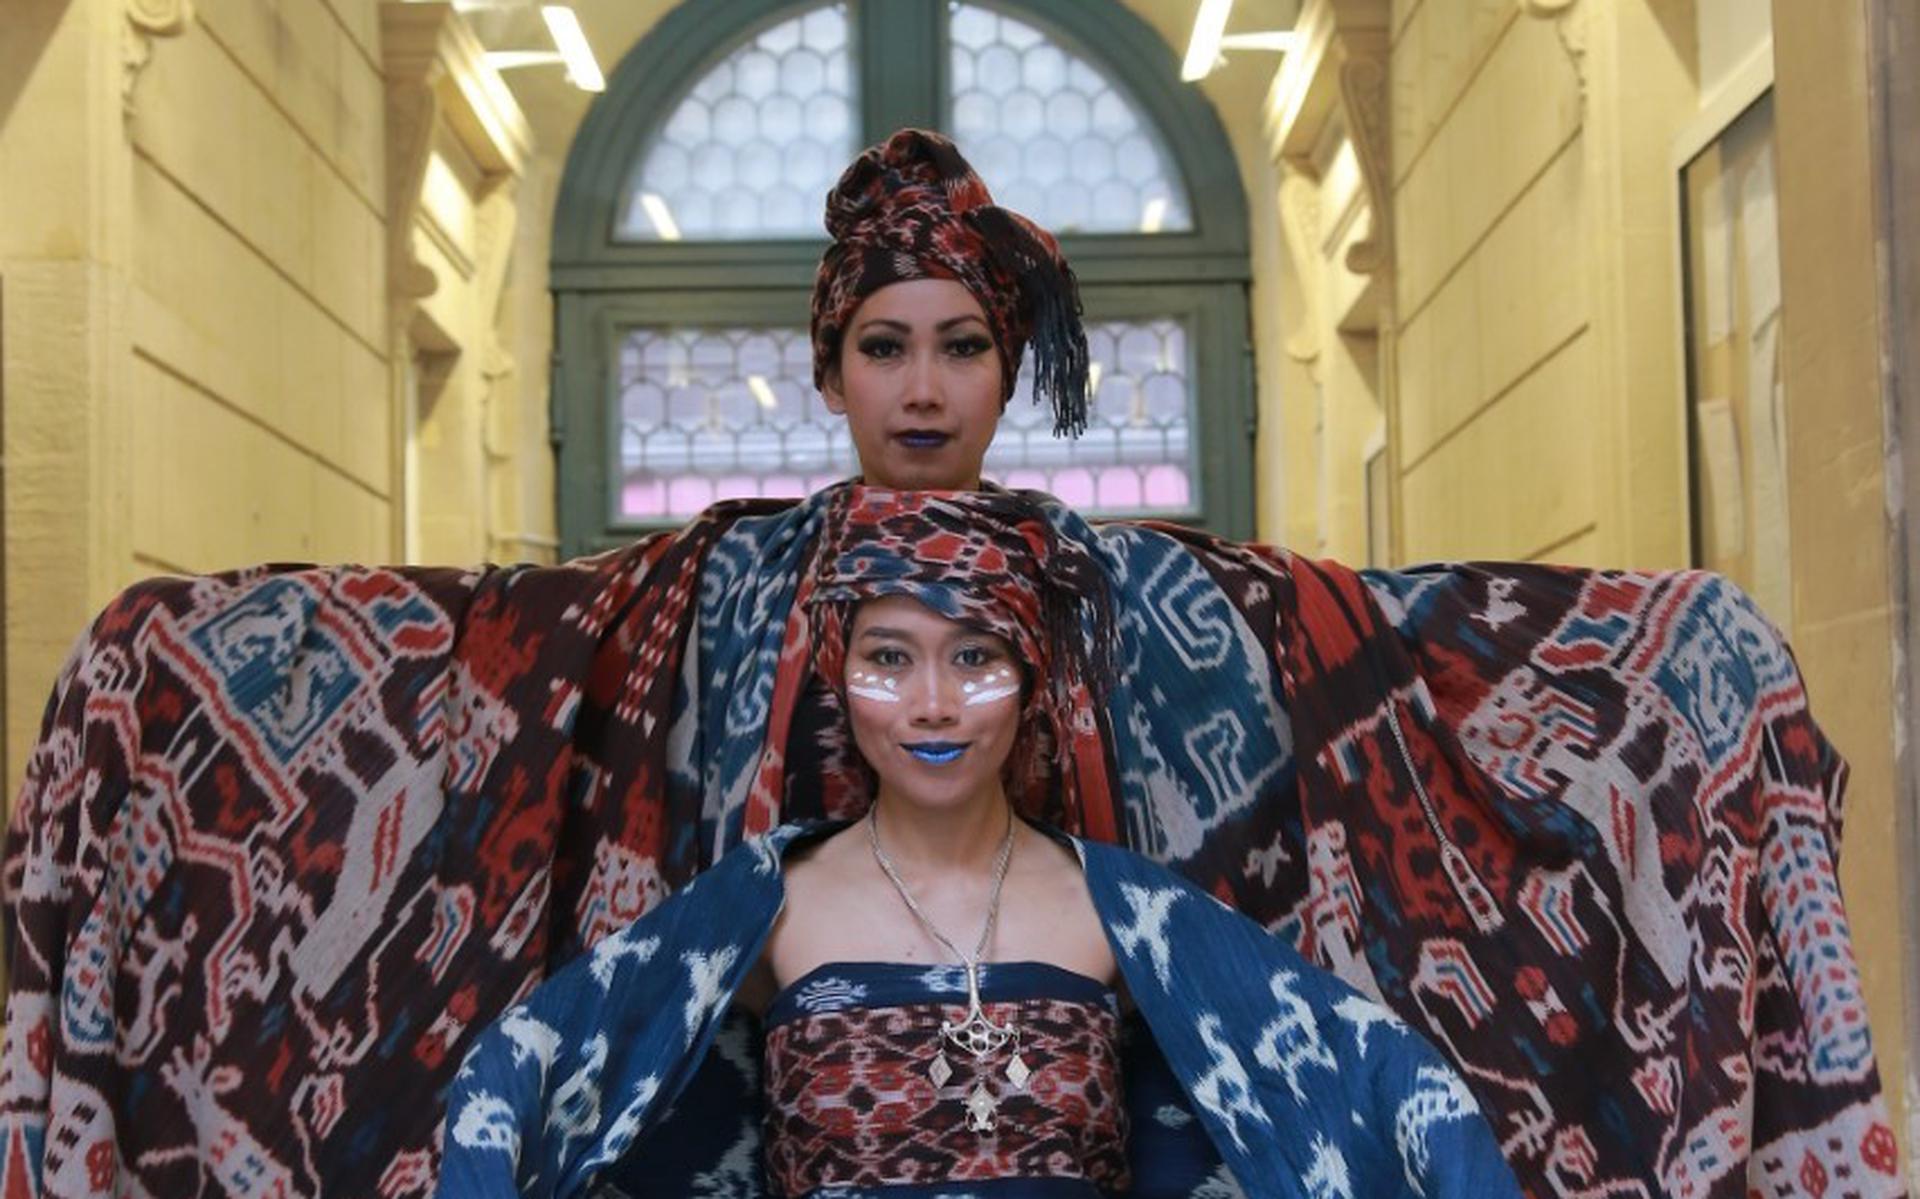 TIjdens de Pasar Ikat presenteert mode-ontwerpster Dian Oerip kleding van Ikat-stoffen.